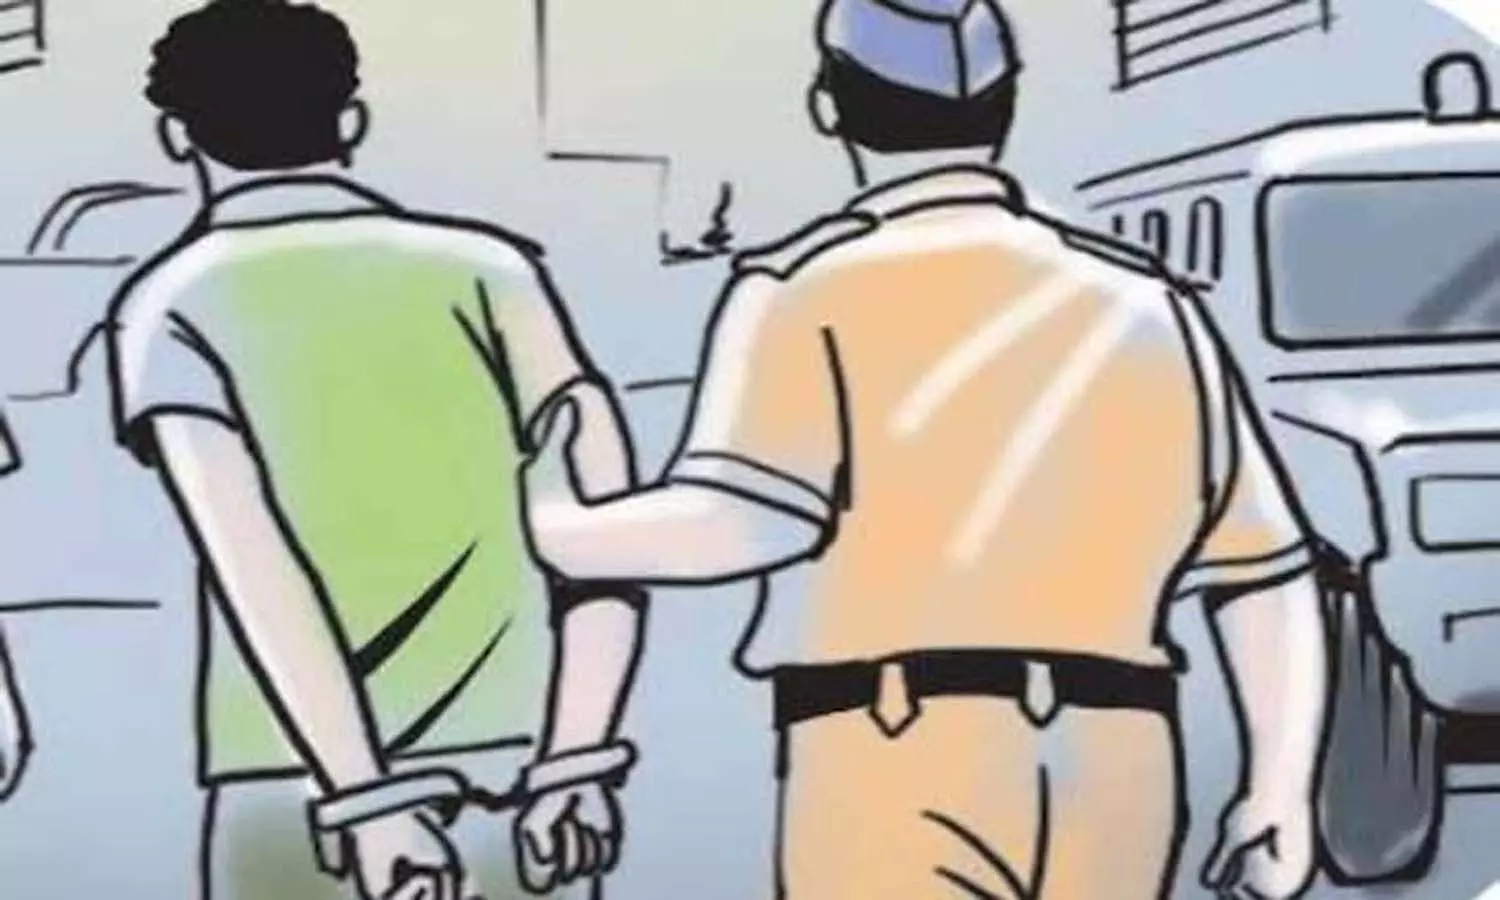 रीवा के जय स्तंभ में सतना के व्यापारी से लूट करने वाले 2 आरोपी गिरफ्तार